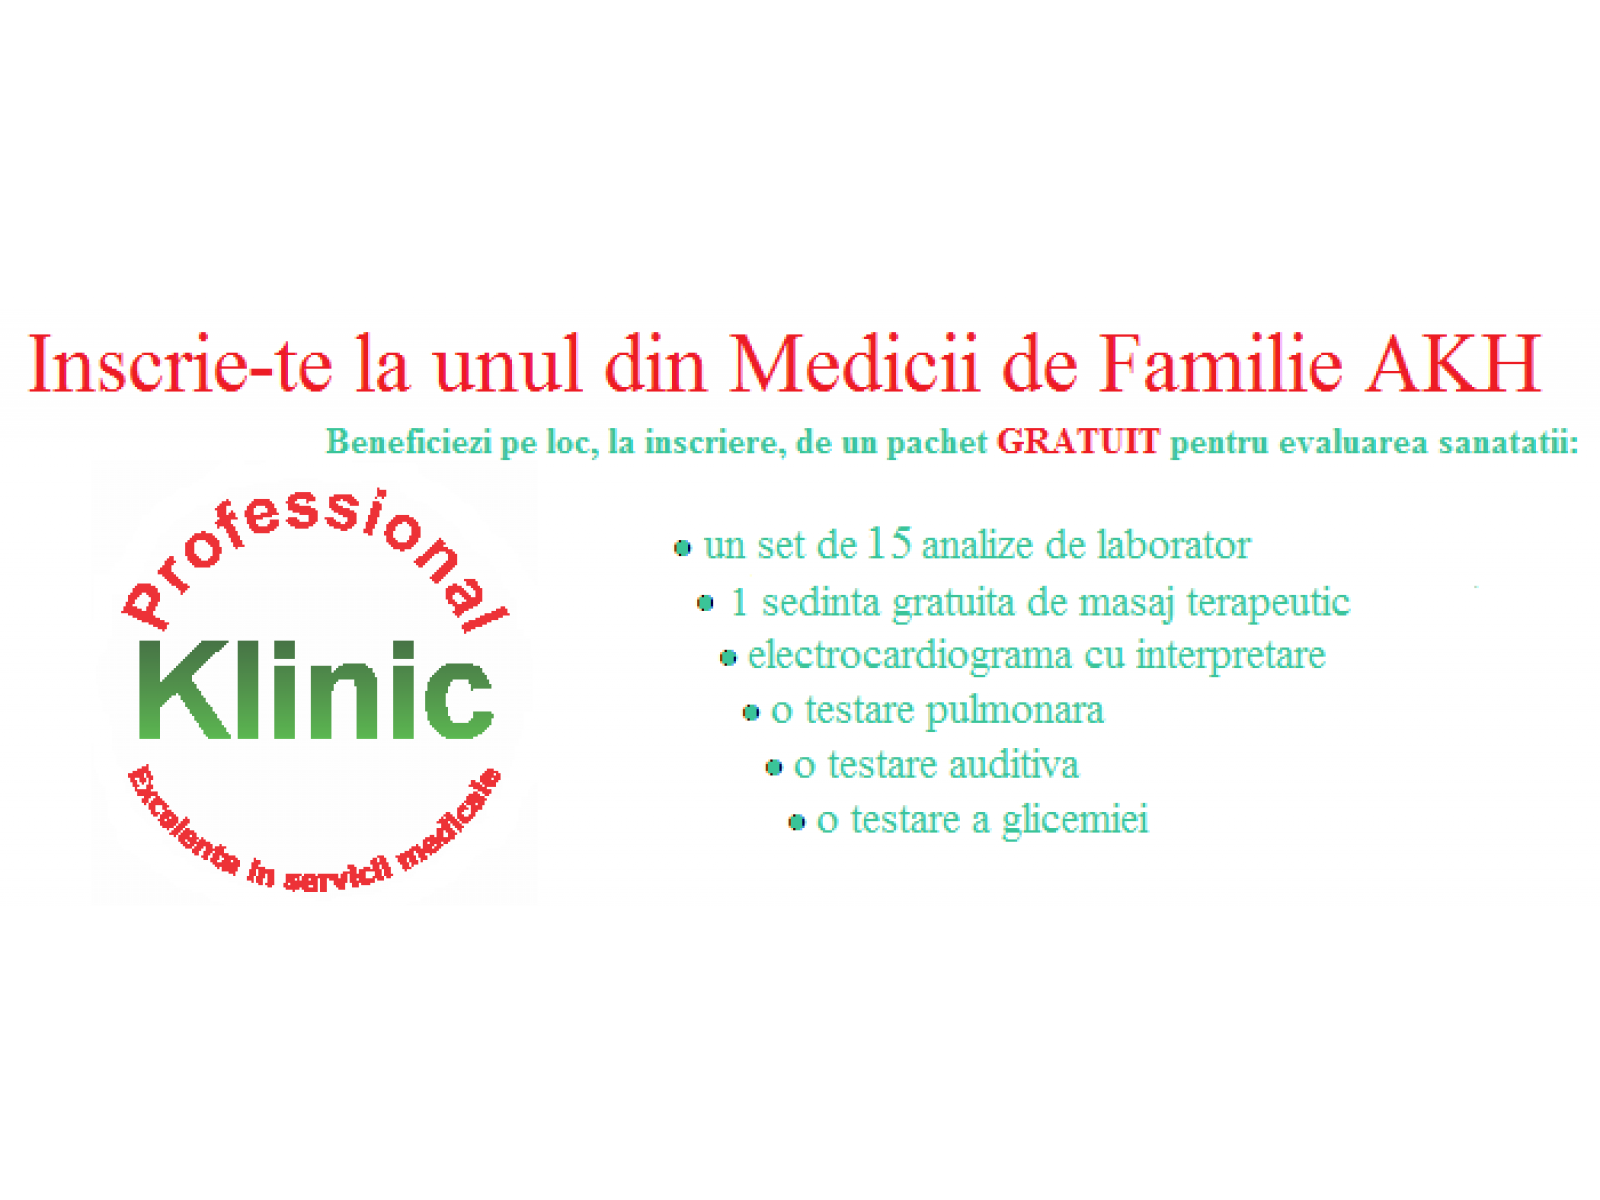 Professional Klinic - oferta_MF.png